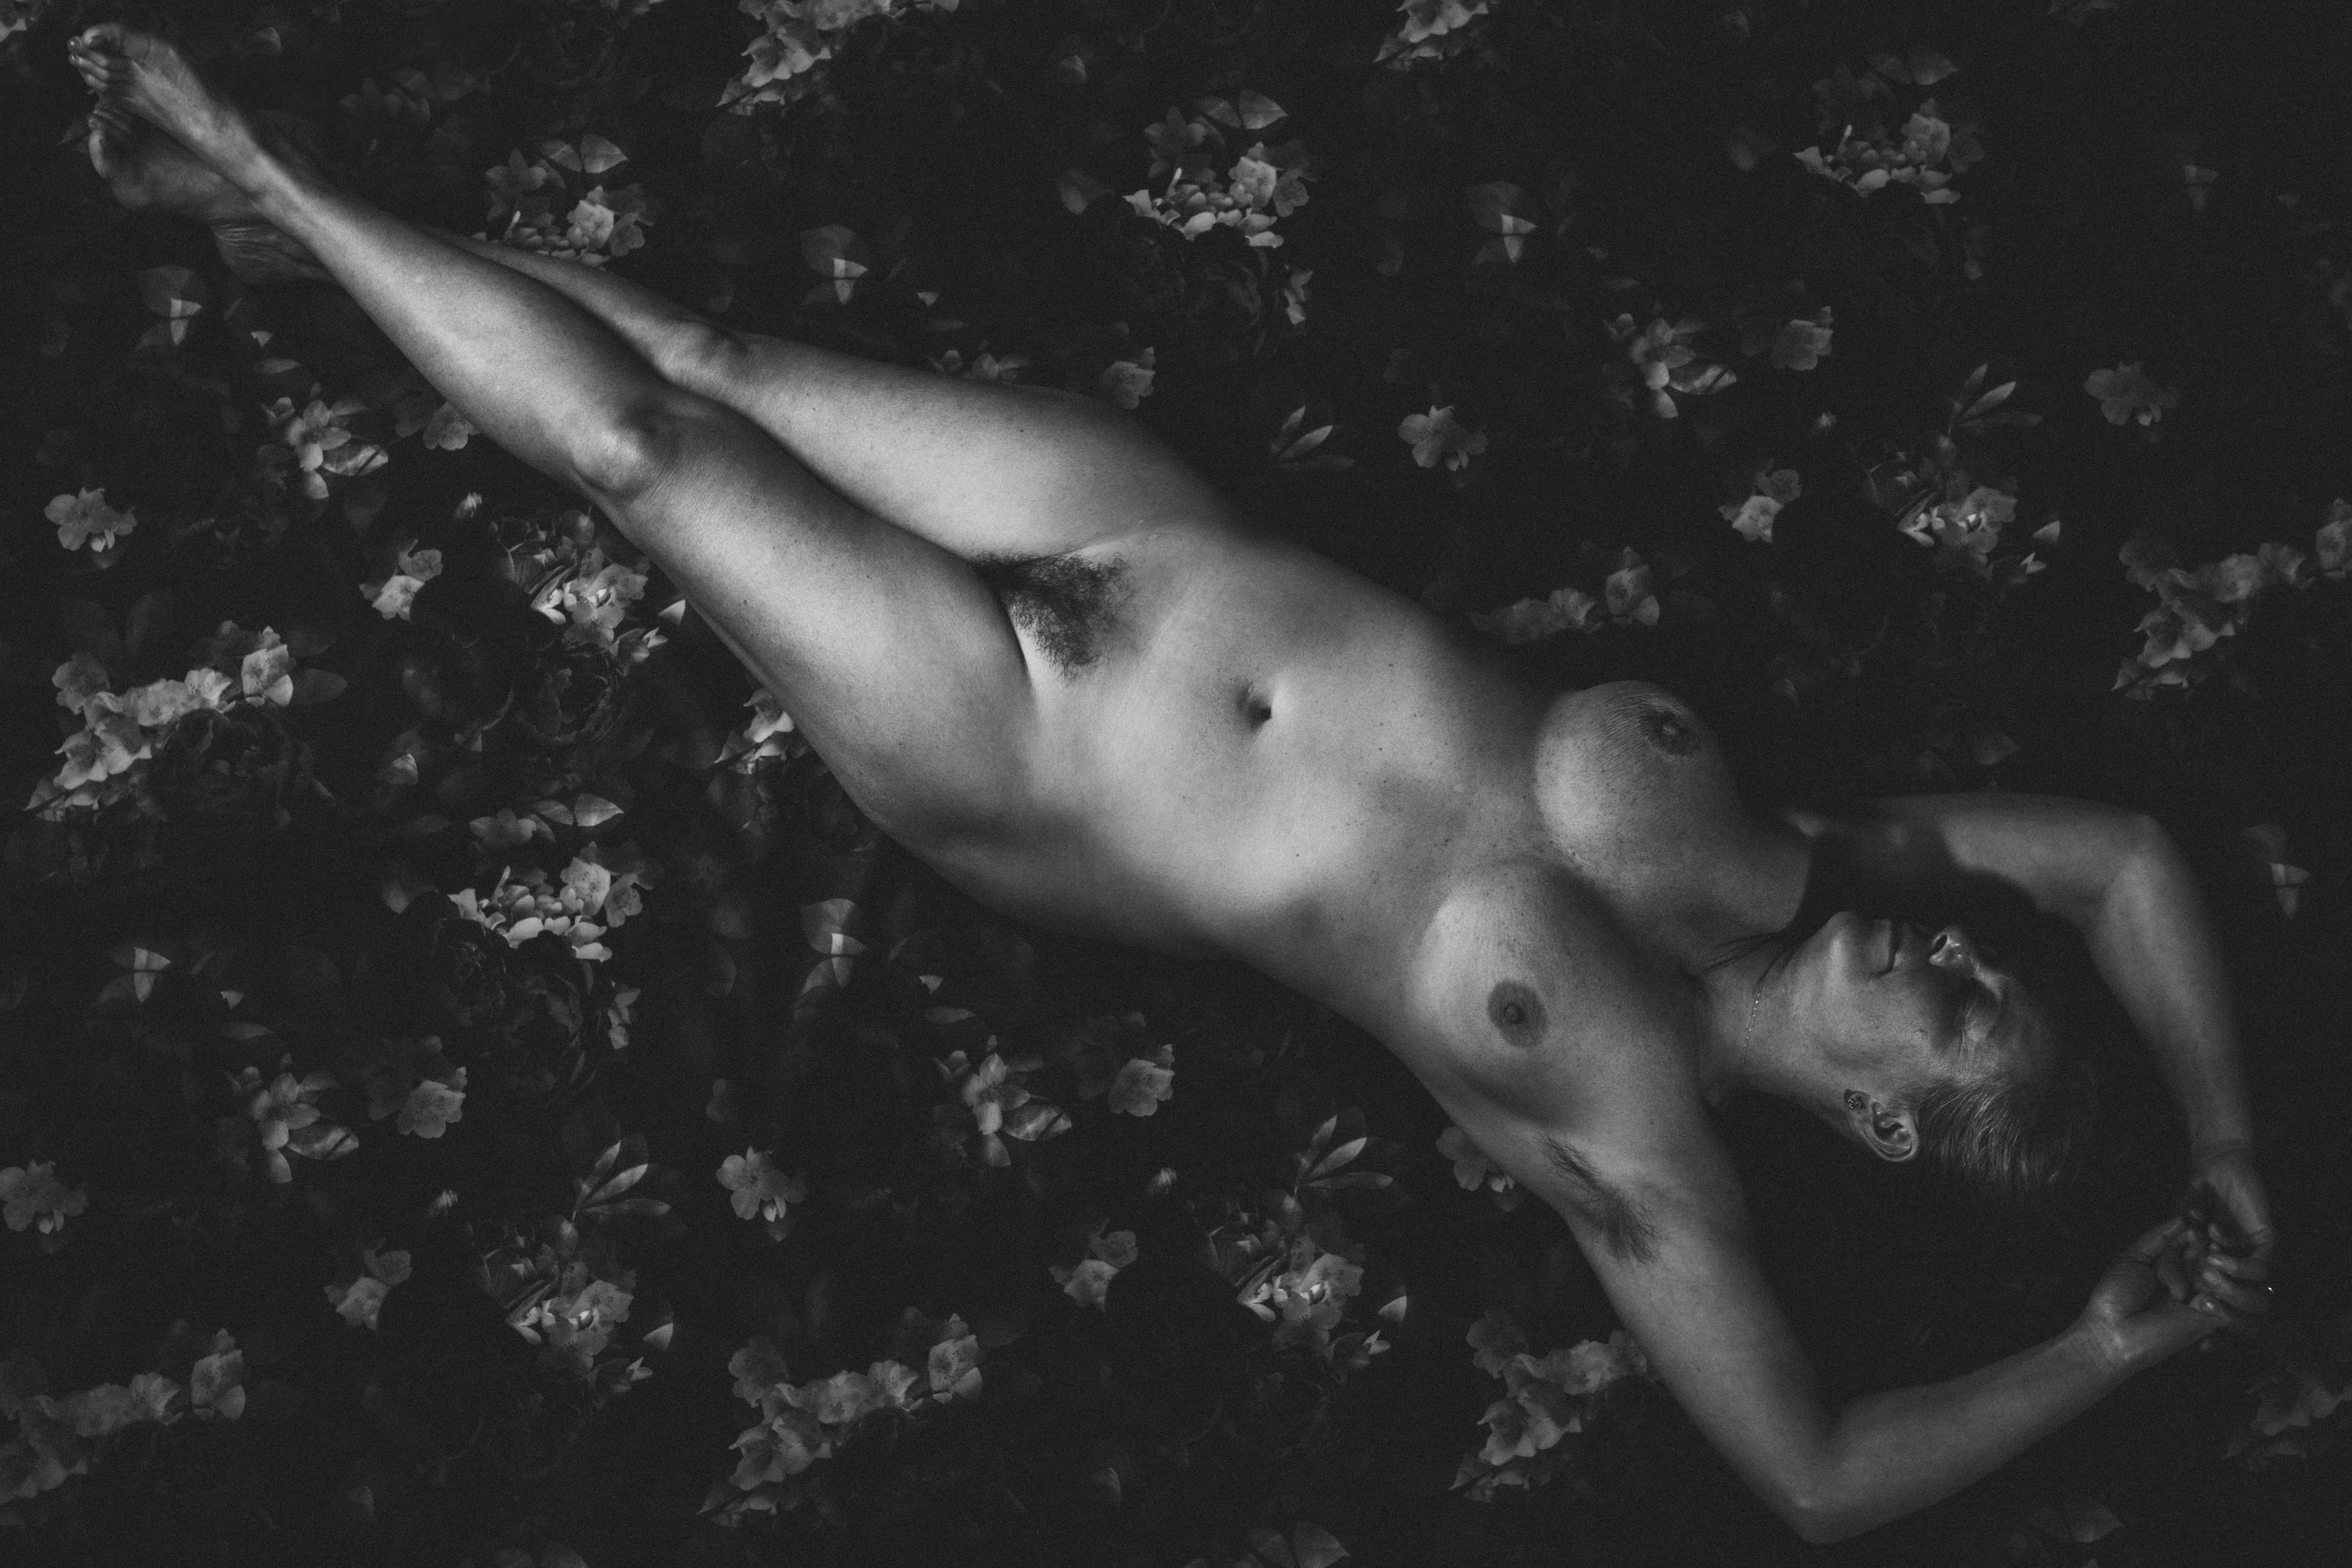 Porträt einer nackten Frau, bildende Kunst, Aktfotografie, limitierte Auflage 2/3 (Zeitgenössisch), Photograph, von Laurentina Miksys